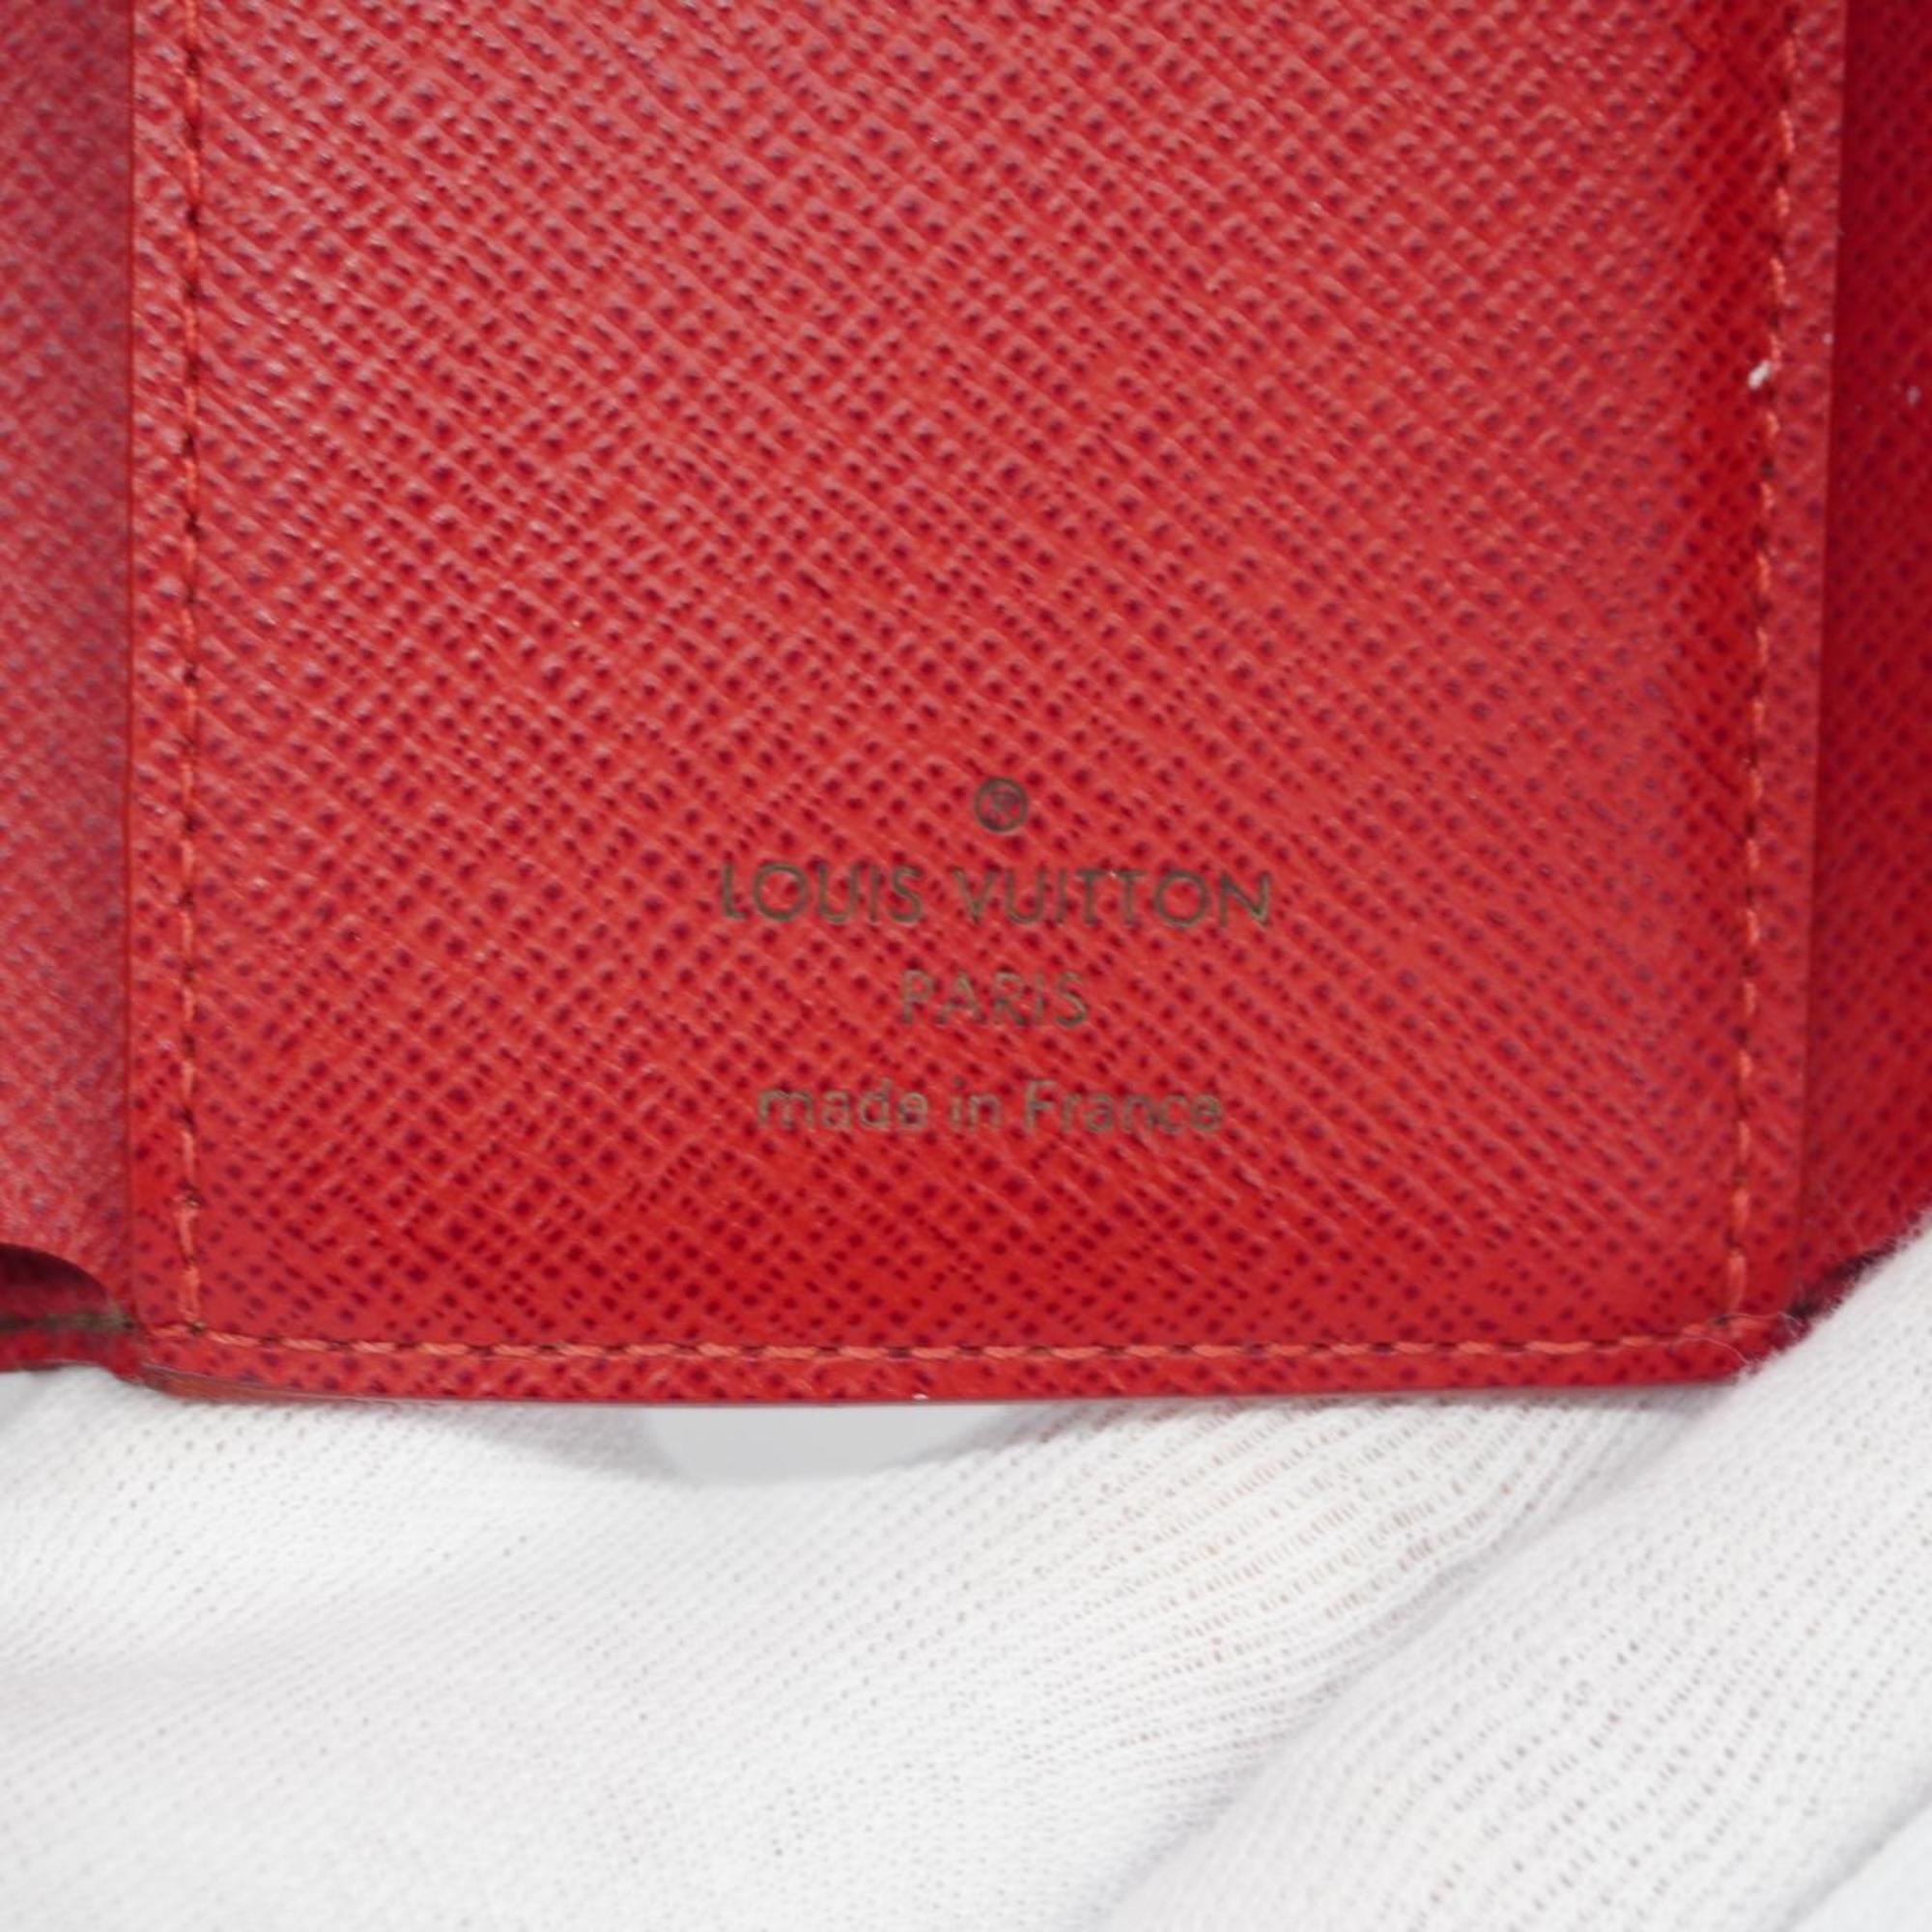 ルイ・ヴィトン(Louis Vuitton) ルイ・ヴィトン 三つ折り財布 ダミエ ポルトフォイユヴィクトリーヌ N61013 エベヌレディース